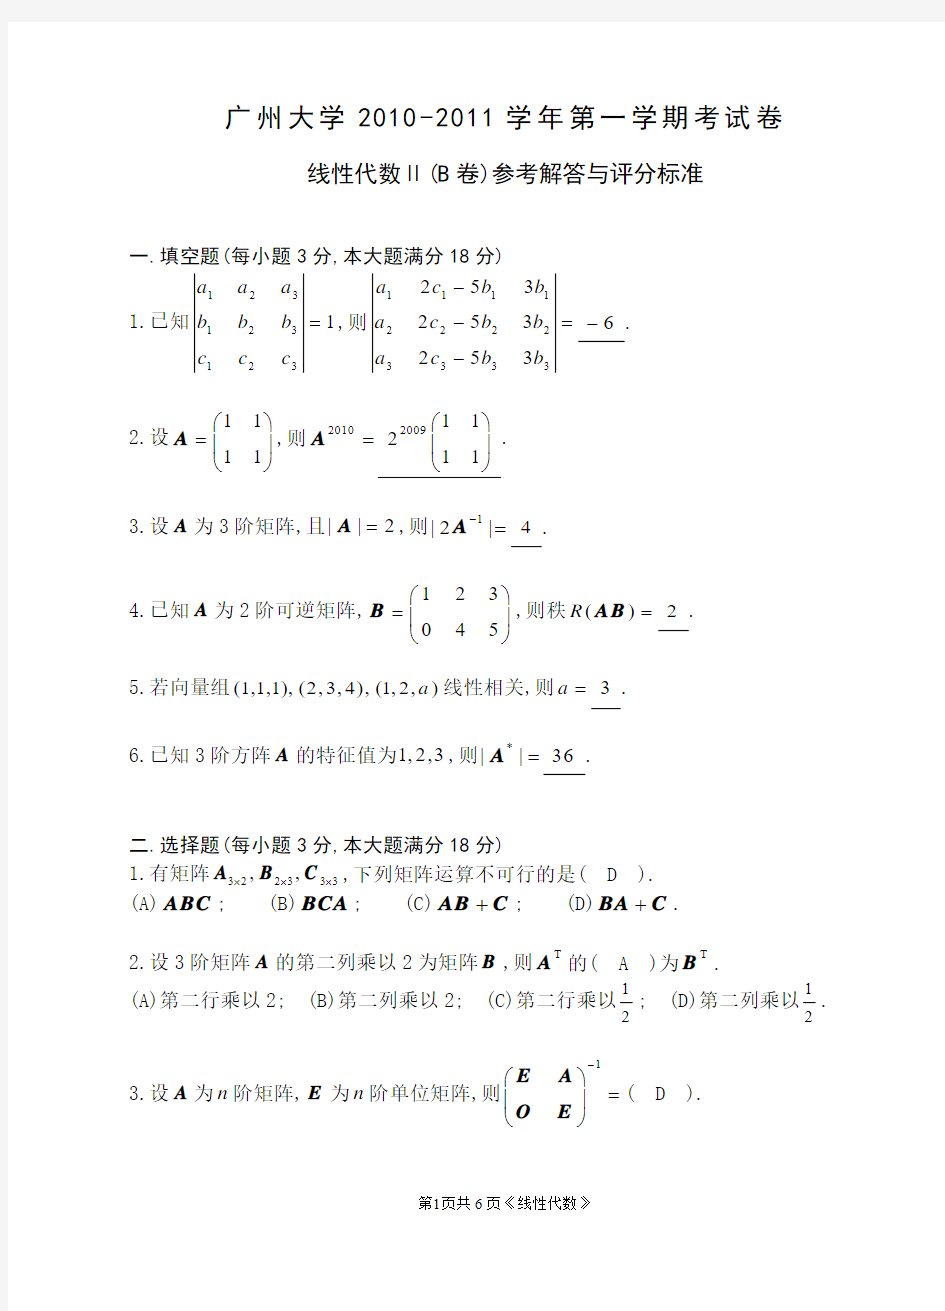 广州大学2009-2010 (6)线性代数期末考试卷试题及解答